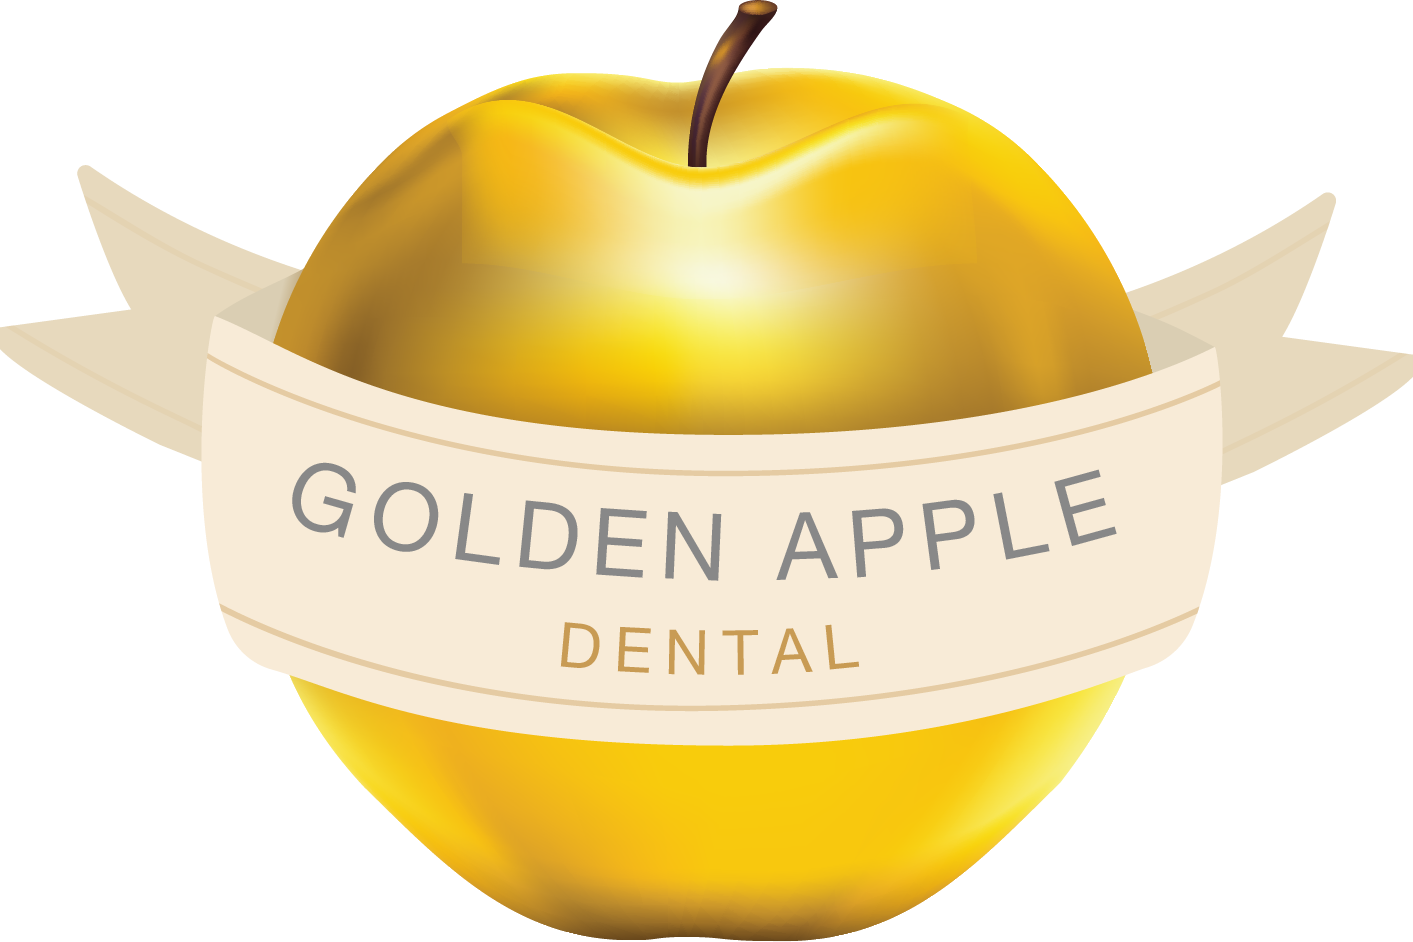 Golden Apple Free Download Image PNG Image